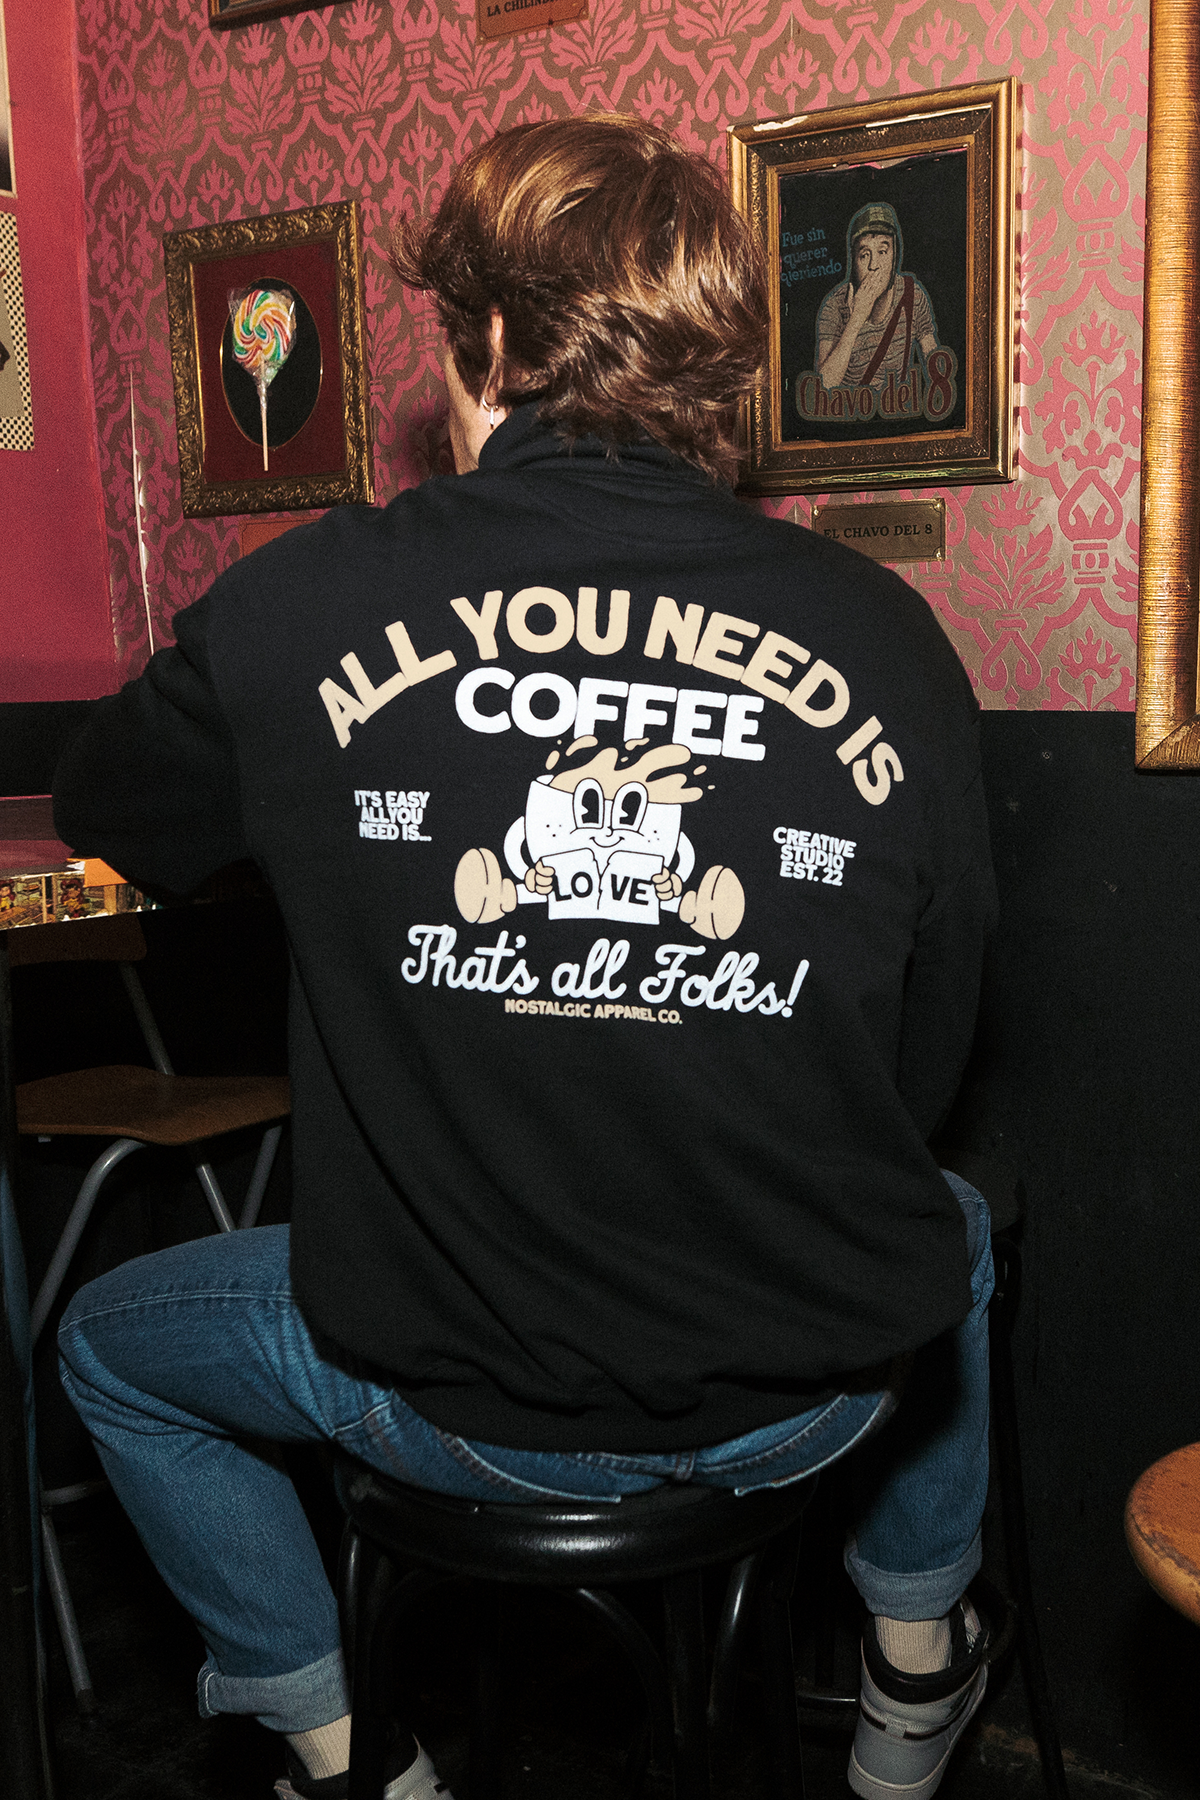 All You Need is Coffee | Oversized Sweatshirt